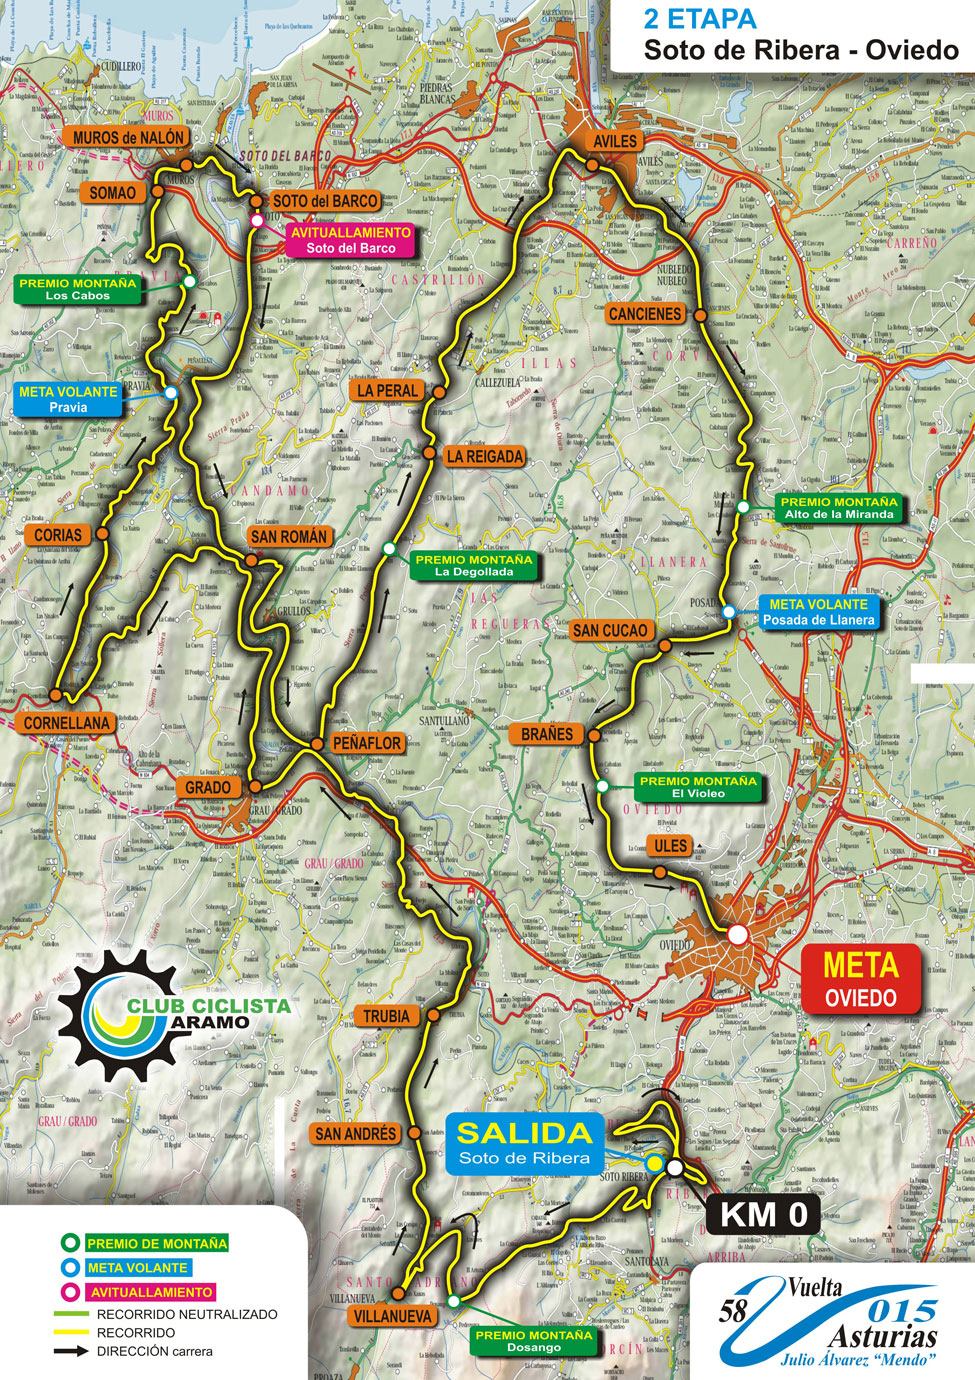 Streckenverlauf Vuelta Asturias Julio Alvarez Mendo 2015 - Etappe 2